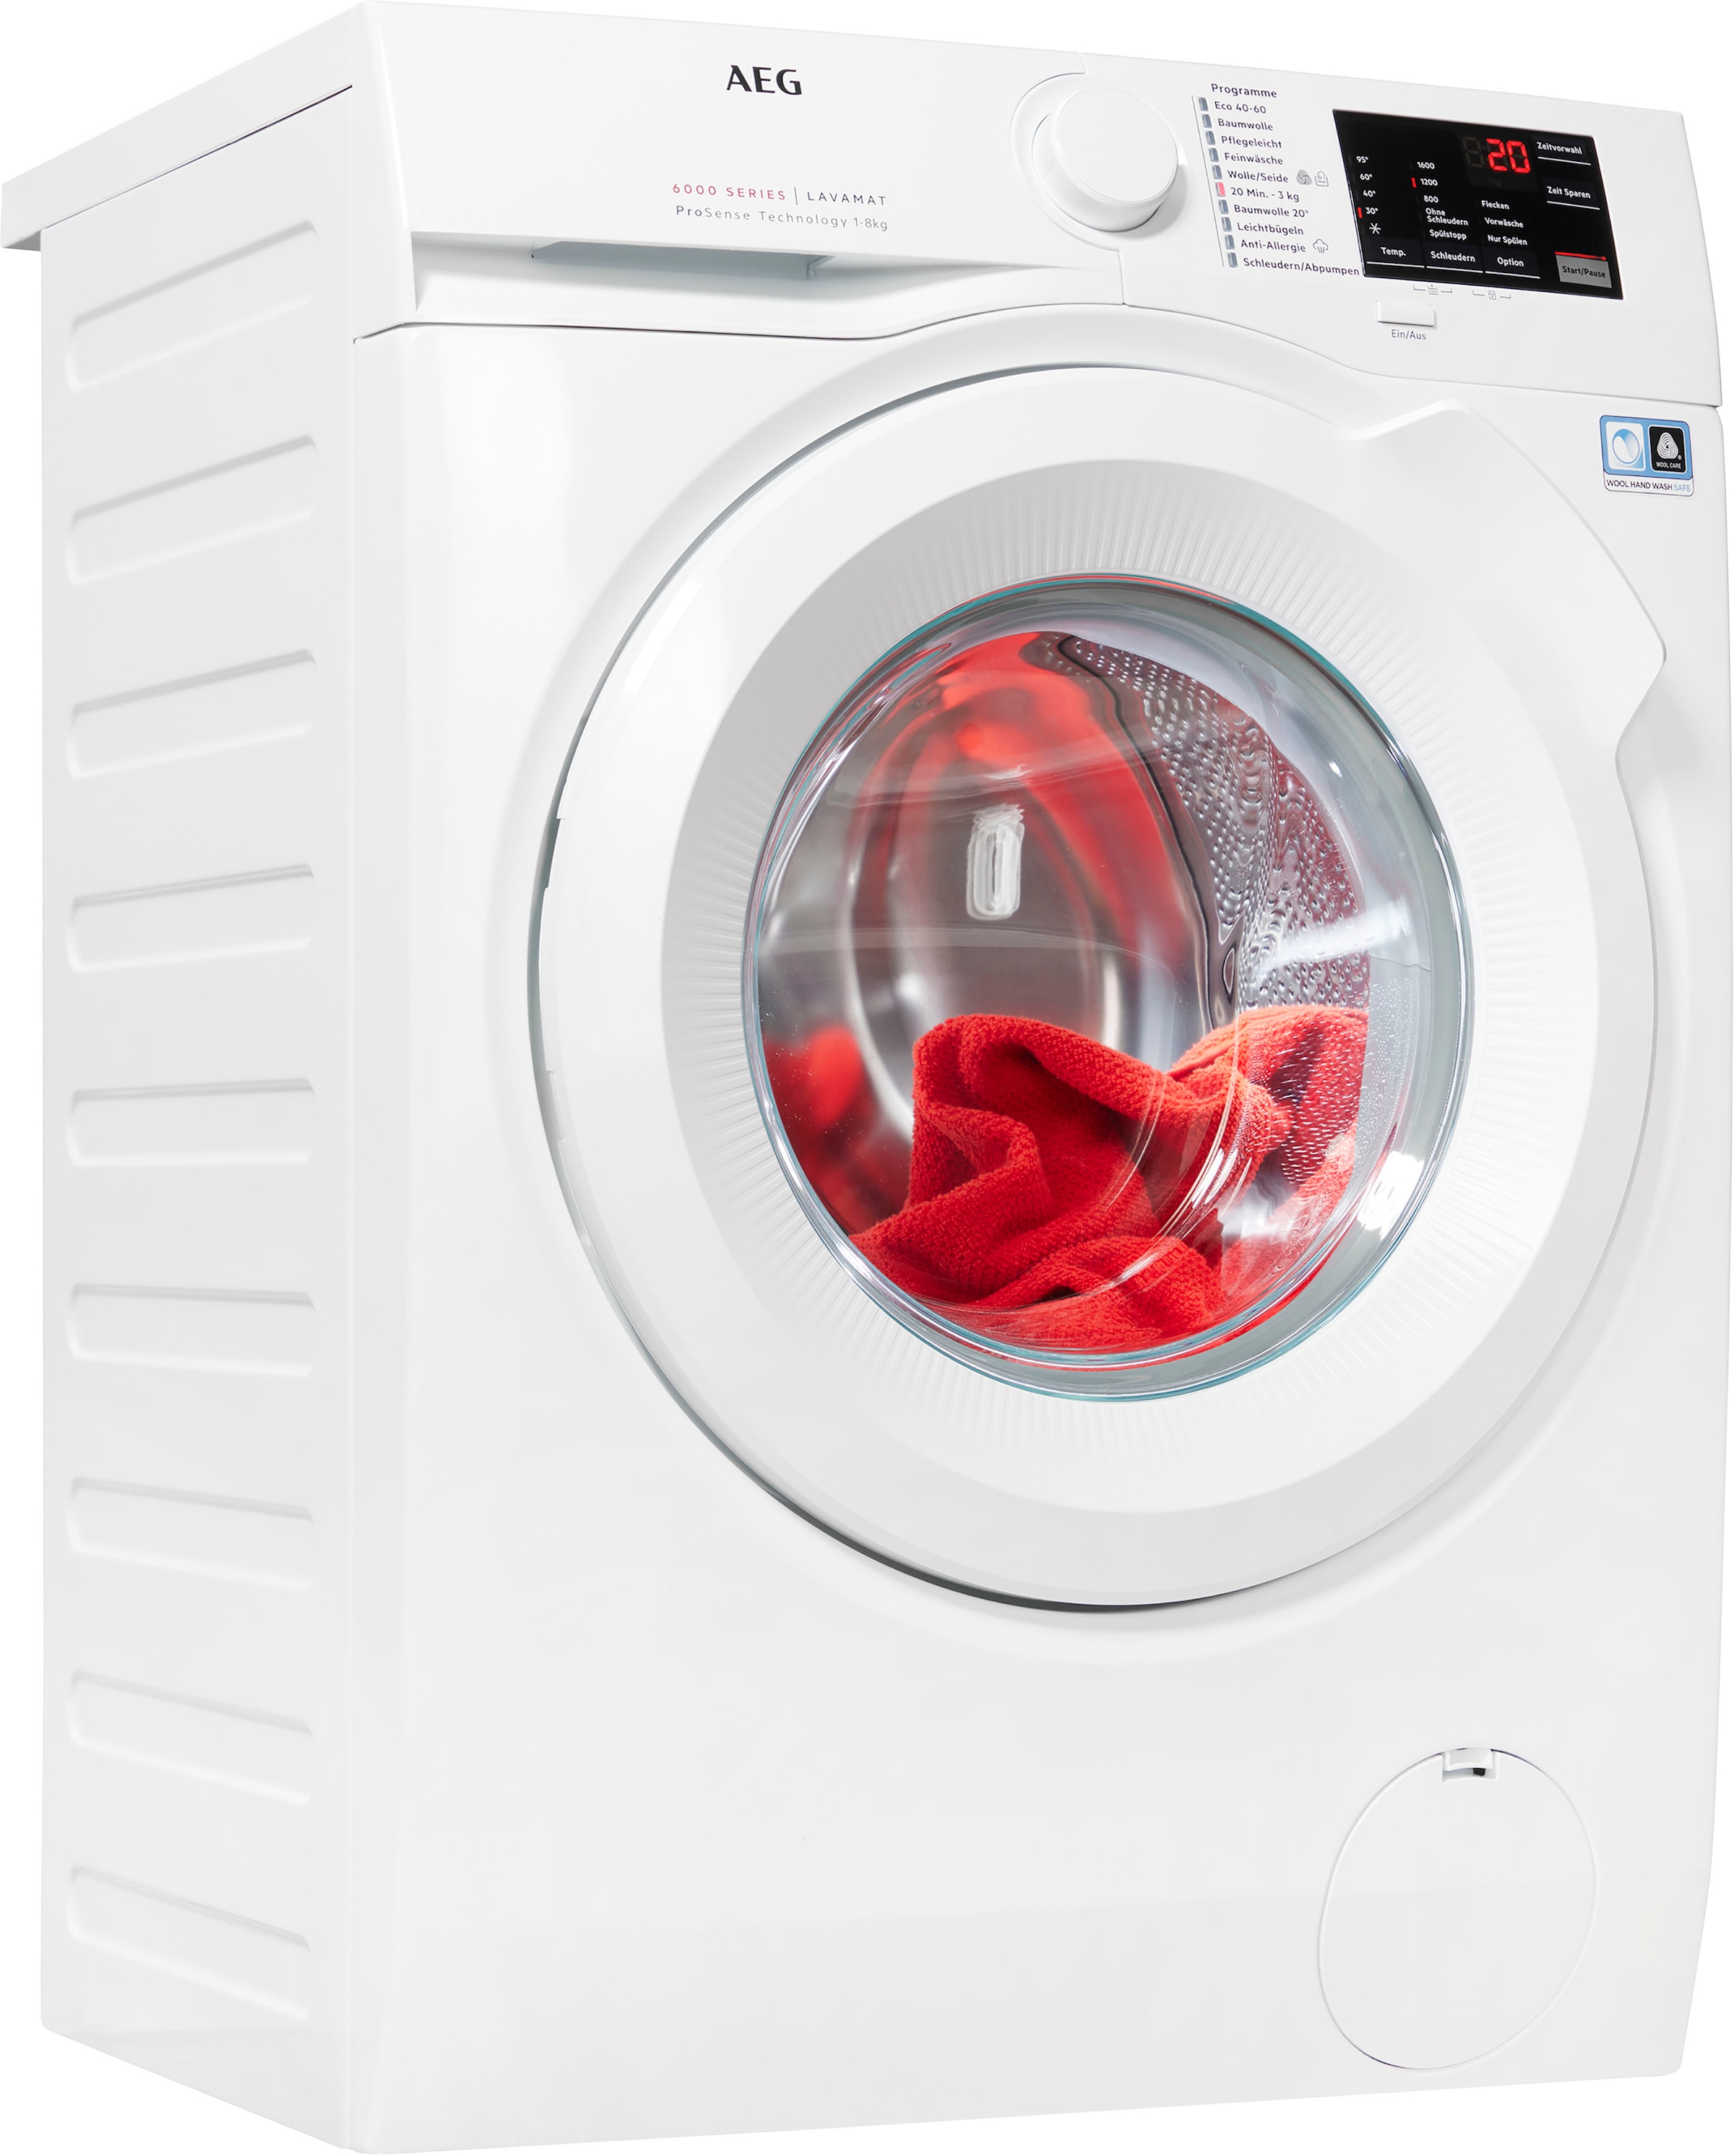 AEG Waschmaschine, Serie 6000, U/min 1600 bei L6FB680FL, kaufen kg, 8 OTTO